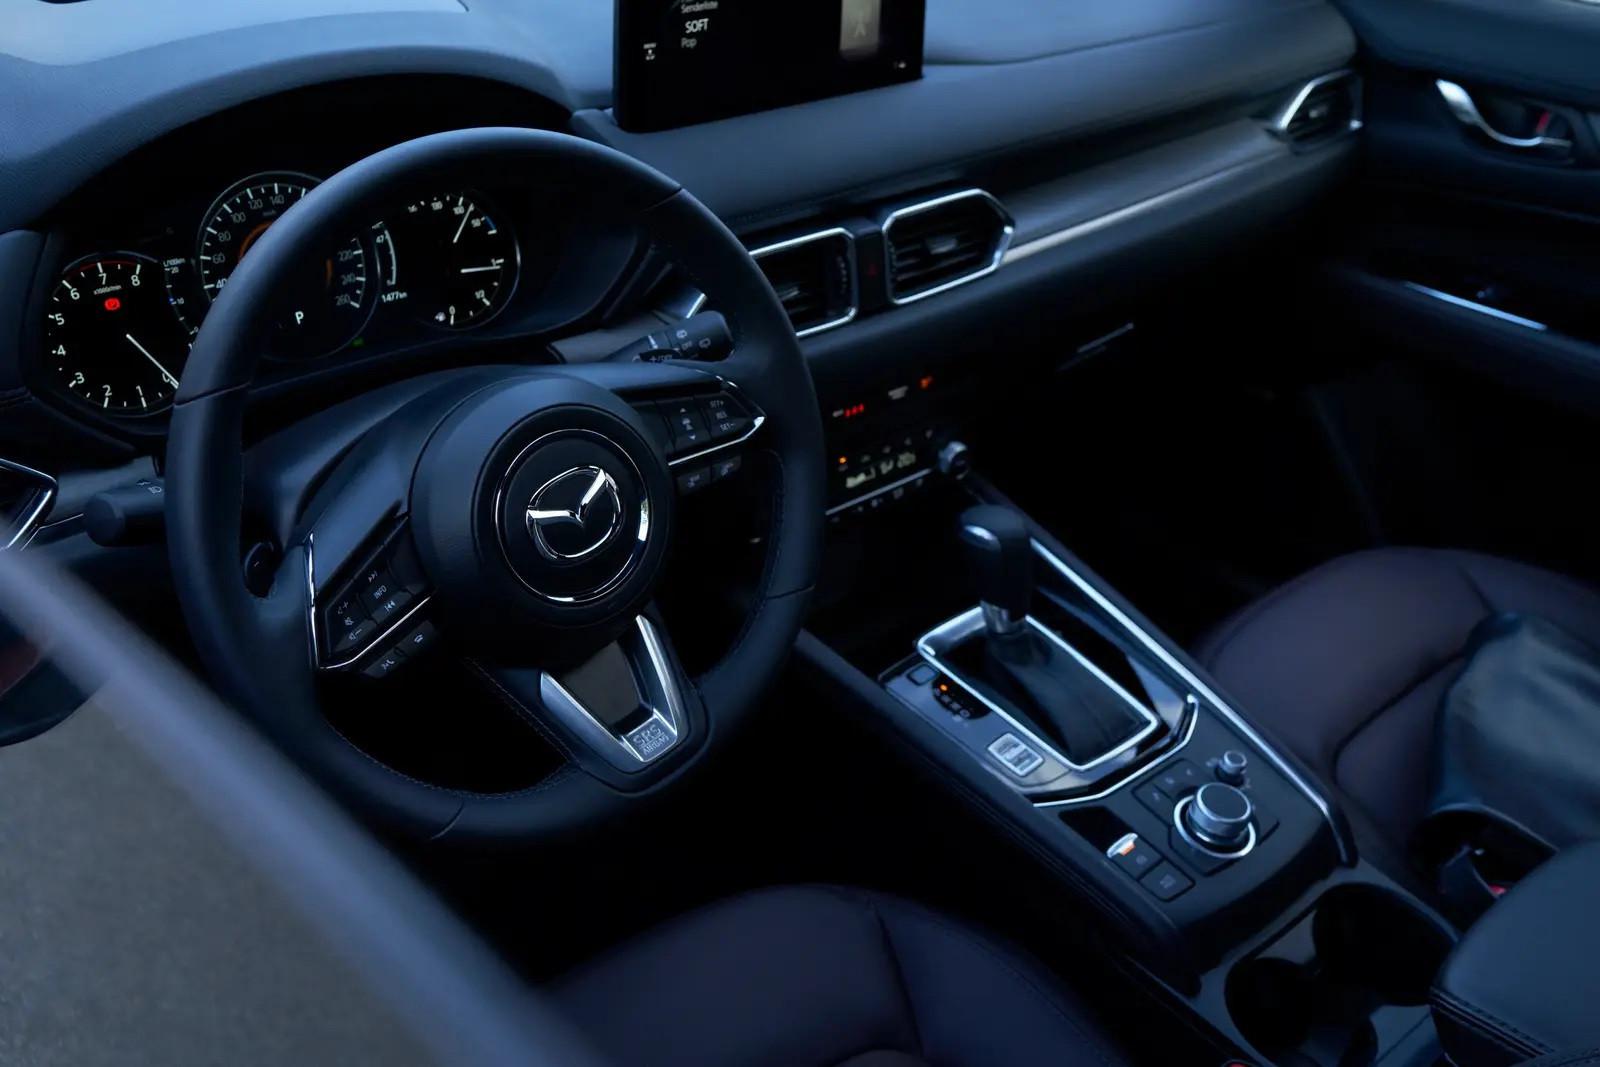 Interior Mazda CX-5 facelift (topspeed.com)